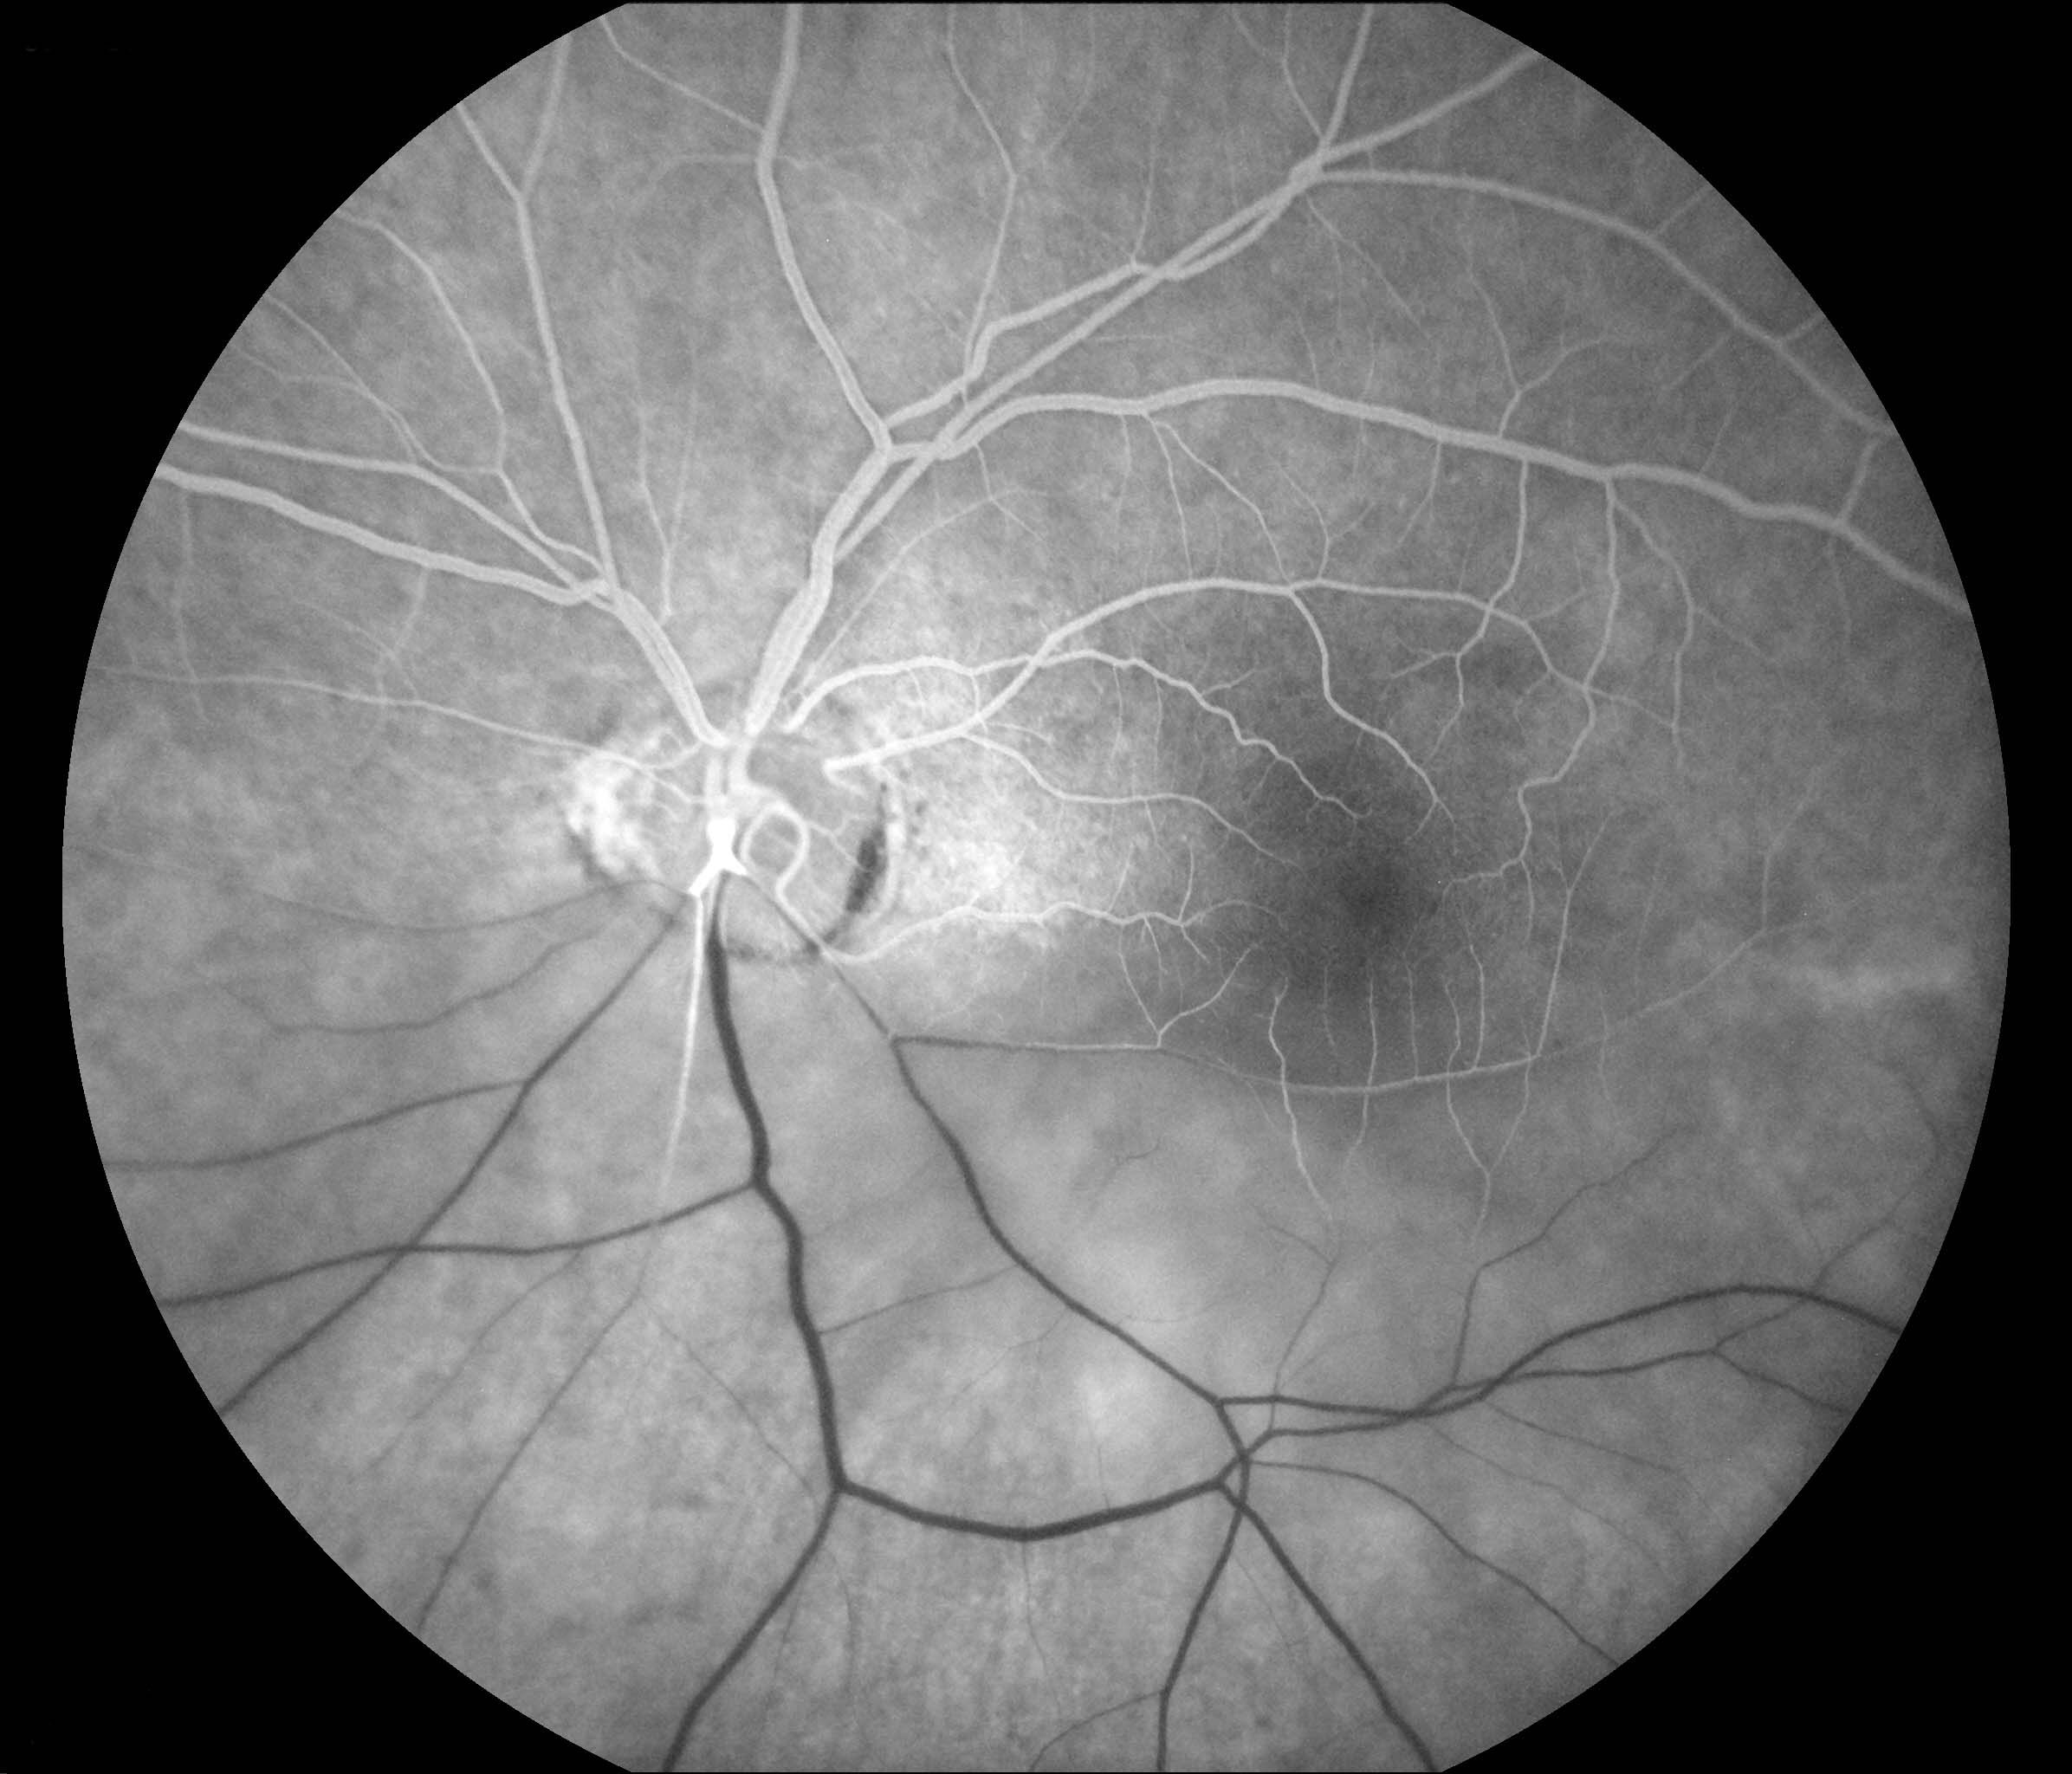 Figure 9.8.11 Hemi-retinal Artery Occlusion